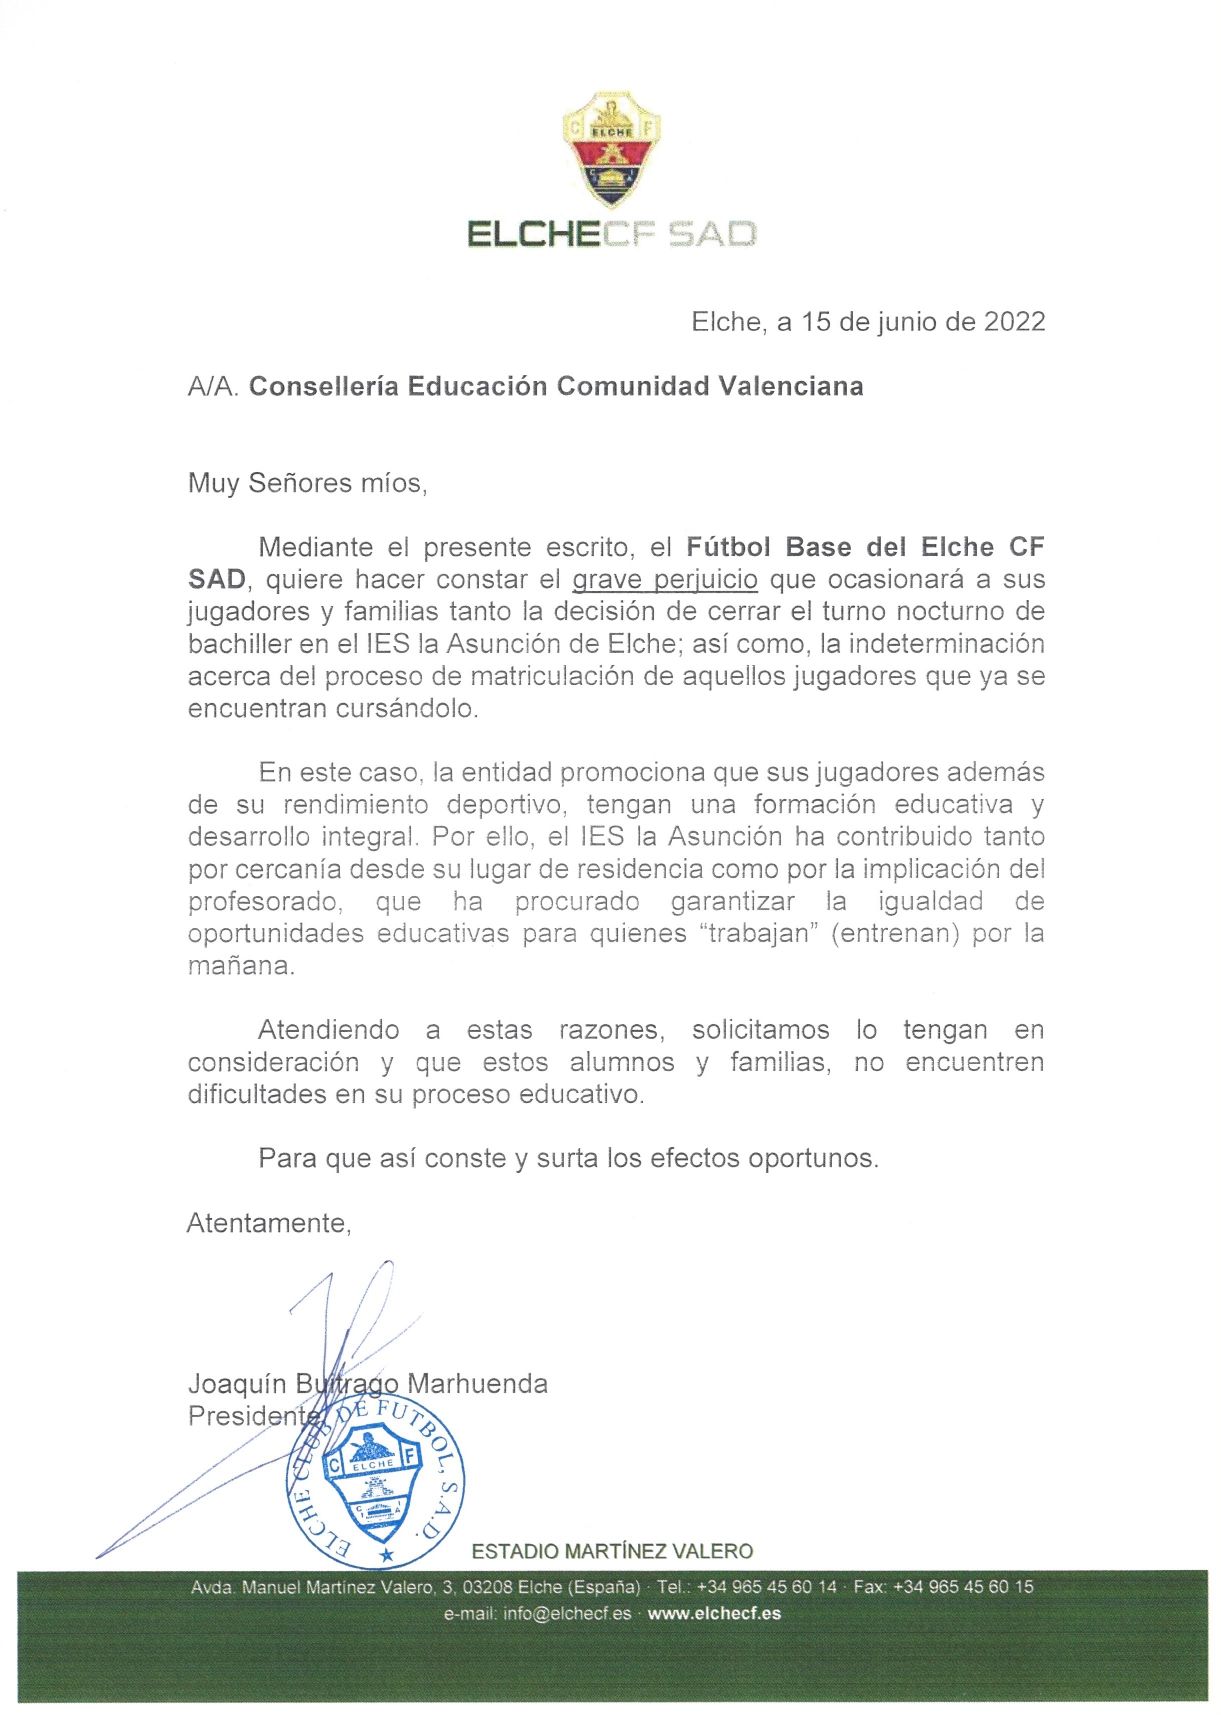 Carta del presidente del Elche CF, Joaquín Buitrago, a la Conselleria de Educación.